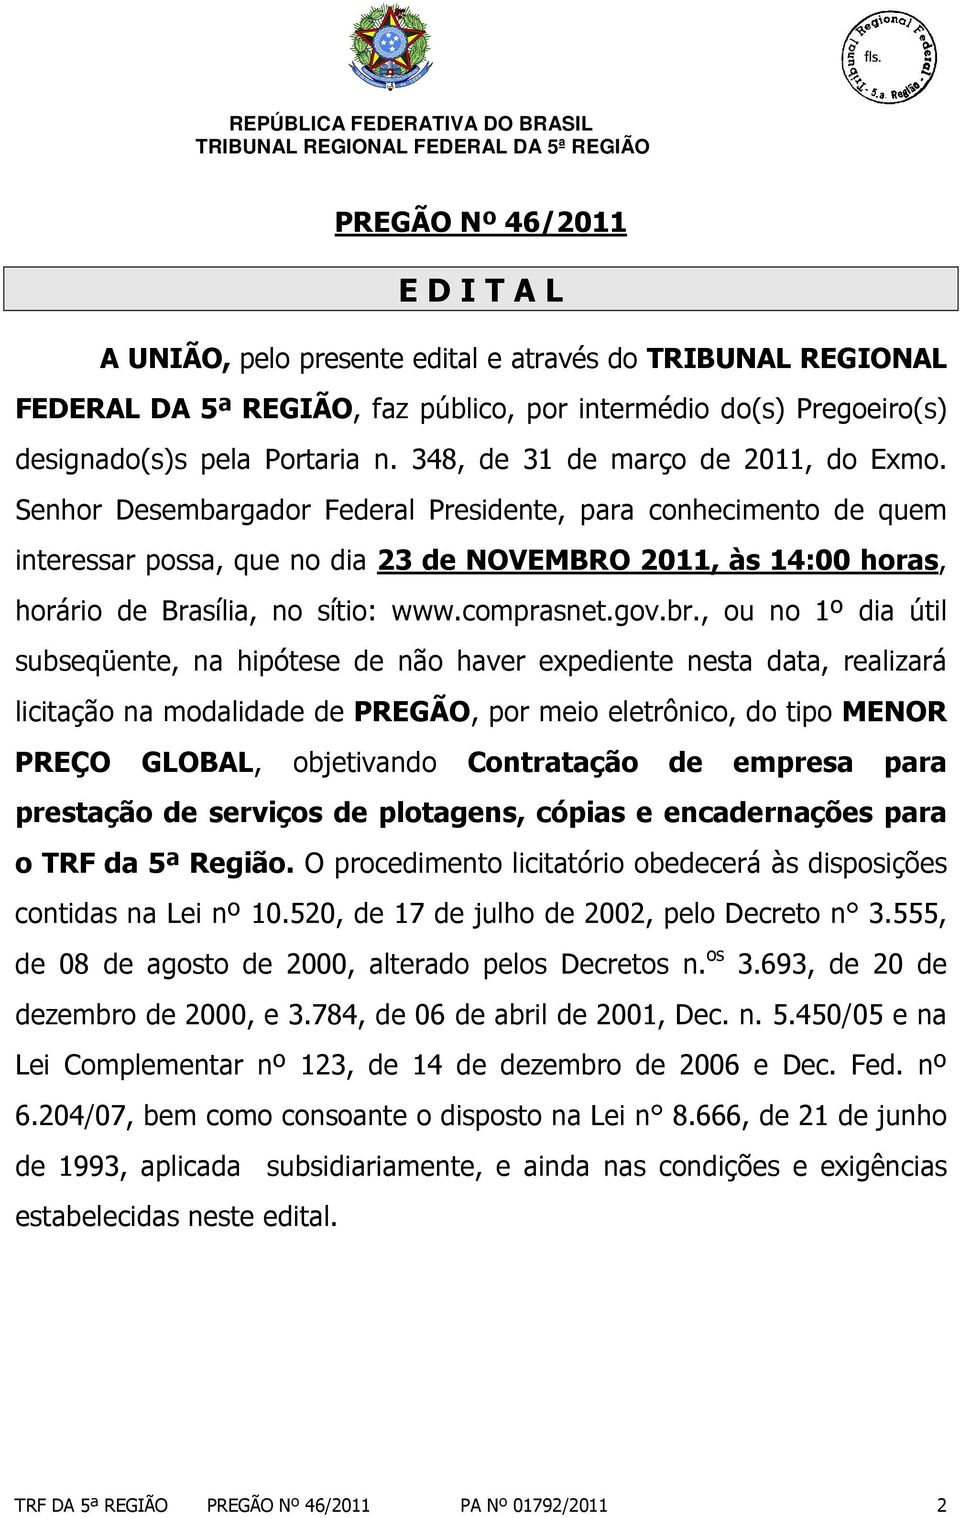 Senhor Desembargador Federal Presidente, para conhecimento de quem interessar possa, que no dia 23 de NOVEMBRO 2011, às 14:00 horas, horário de Brasília, no sítio: www.comprasnet.gov.br.